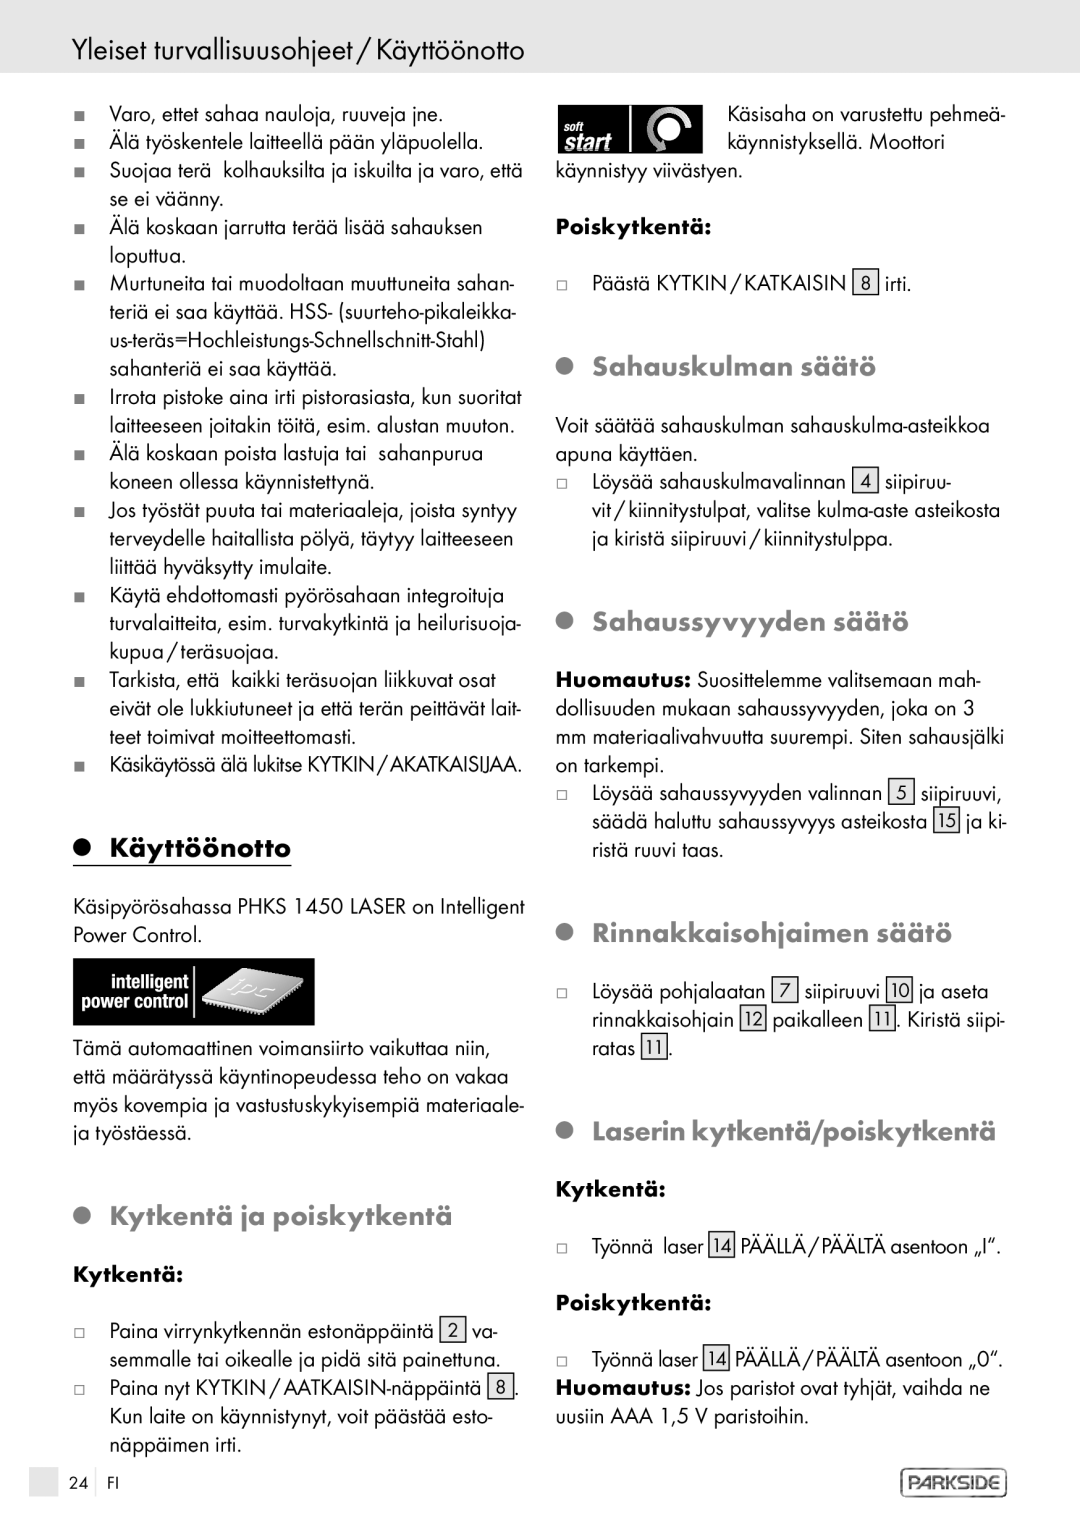 Kompernass PHKS 1450 LASER manual Yleiset turvallisuusohjeet / Käyttöönotto 